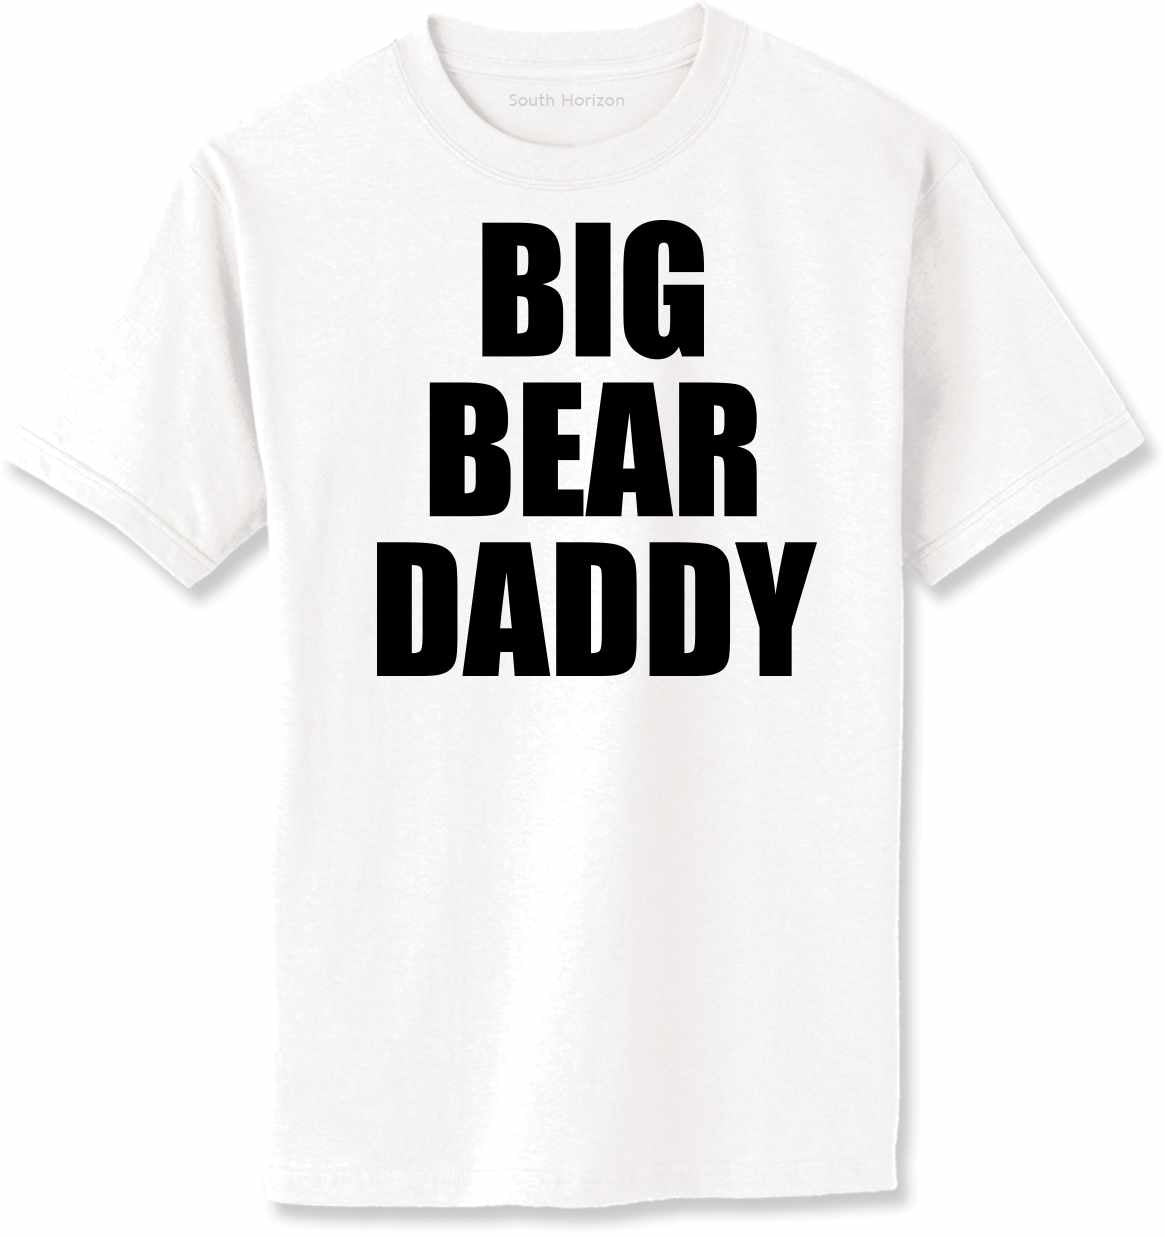 Big Bear Daddy on Adult T-Shirt (#1293-1)